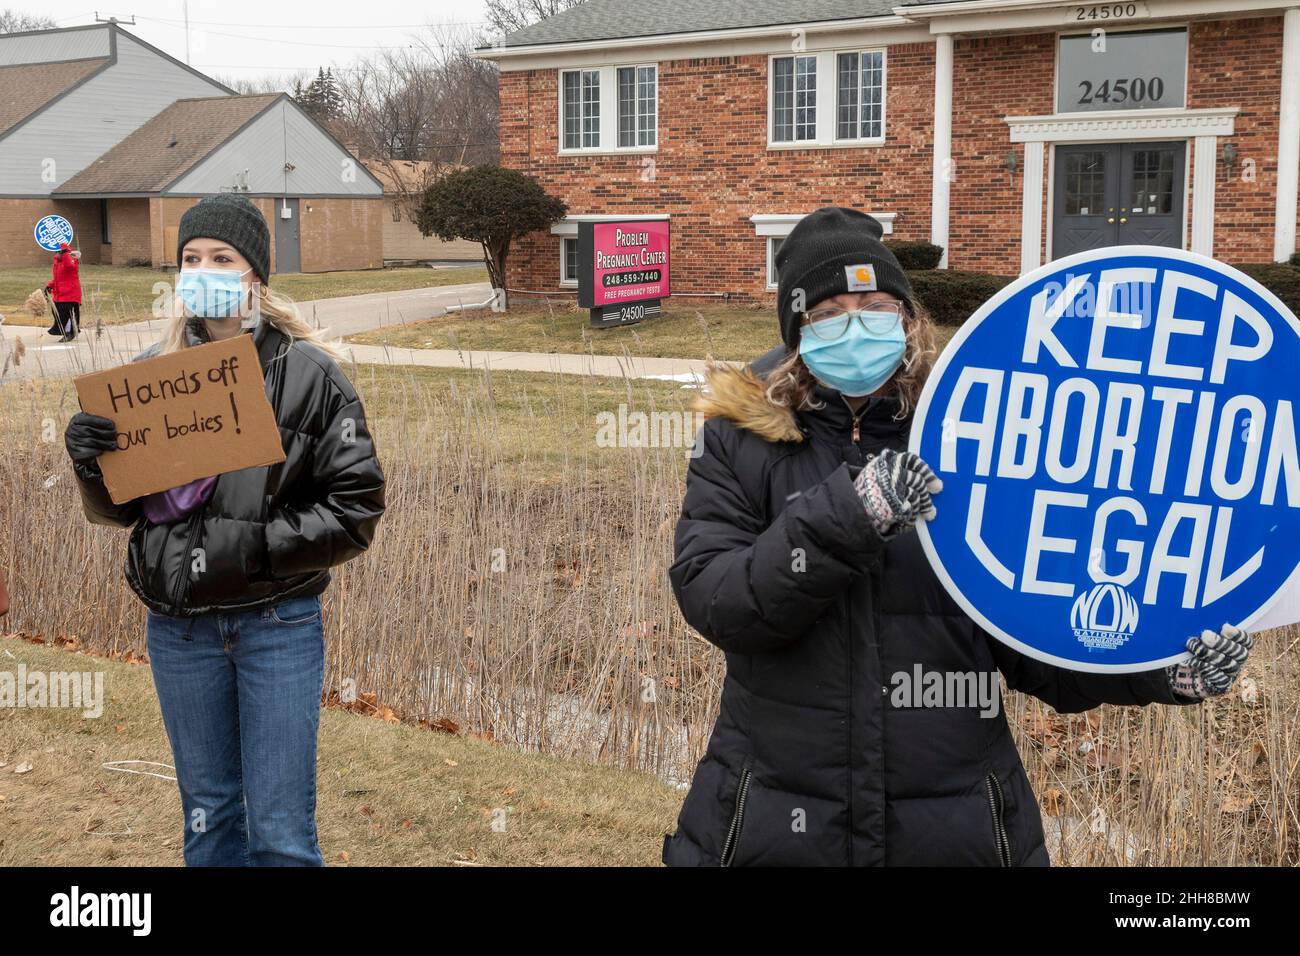 Southfield, Michigan - gli attivisti per i diritti di aborto picchiano il problema del centro di gravidanza, che hanno detto era una 'clinica phony' con un agend anti-aborto Foto Stock